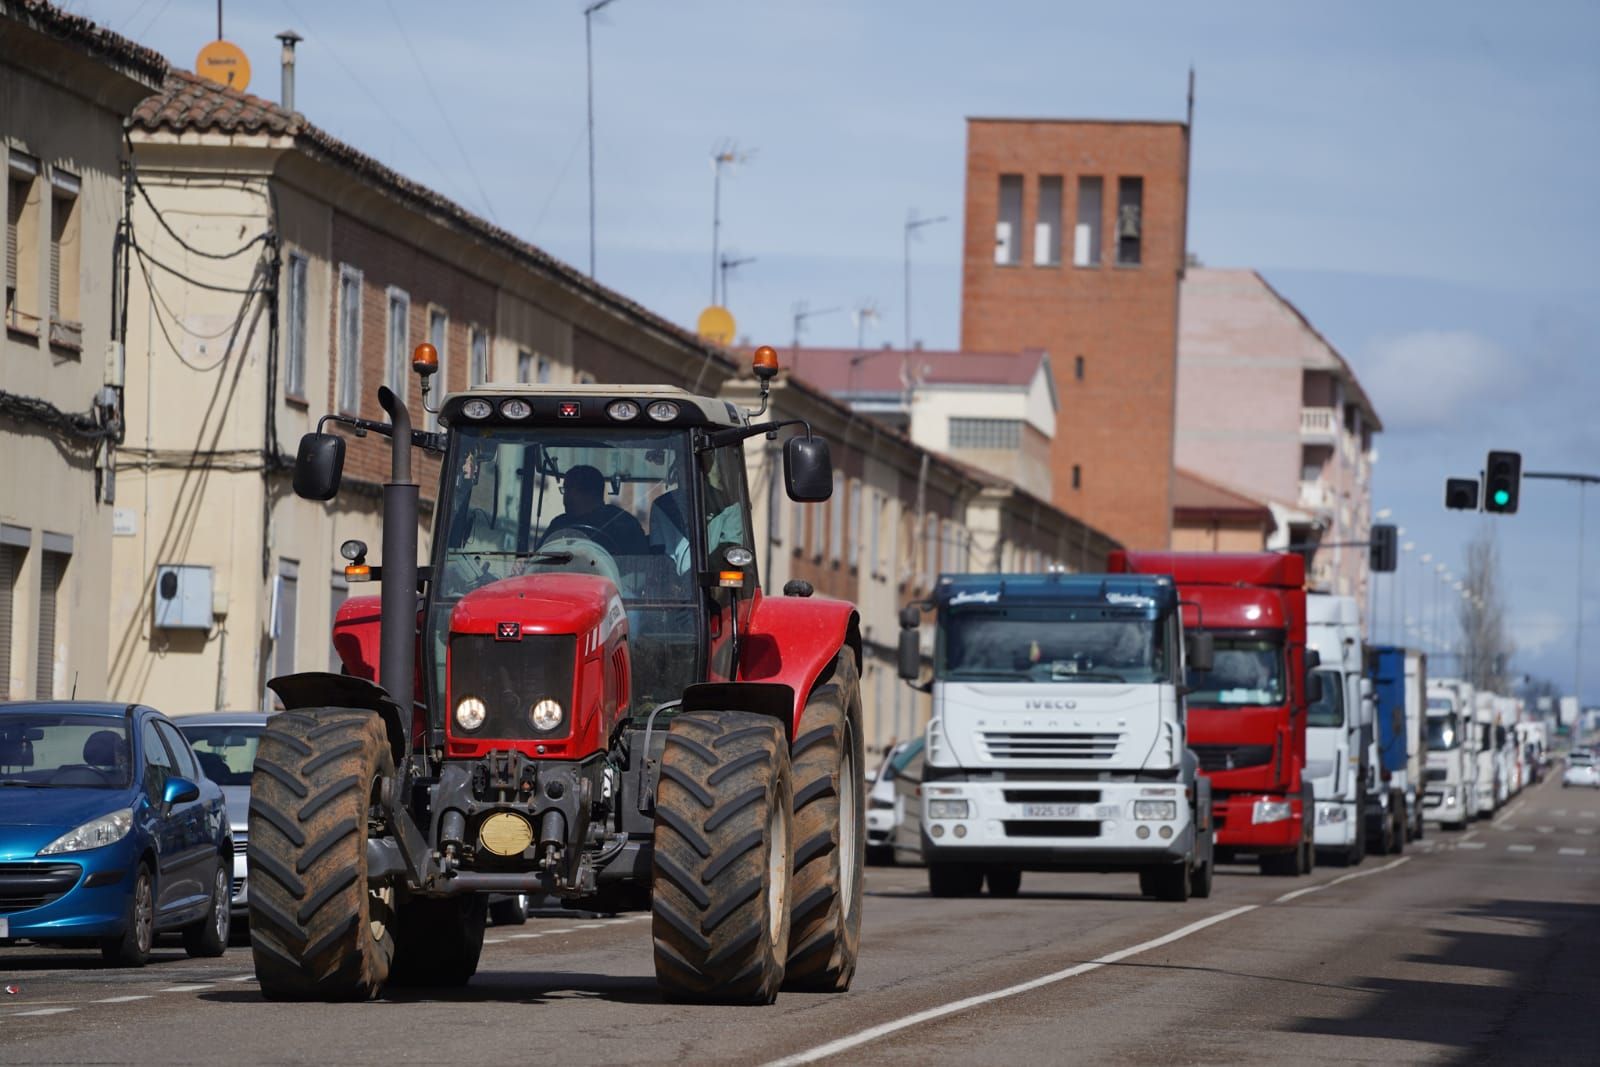 GALERÍA | Zamora explota así contra la crisis: caravana de vehículos